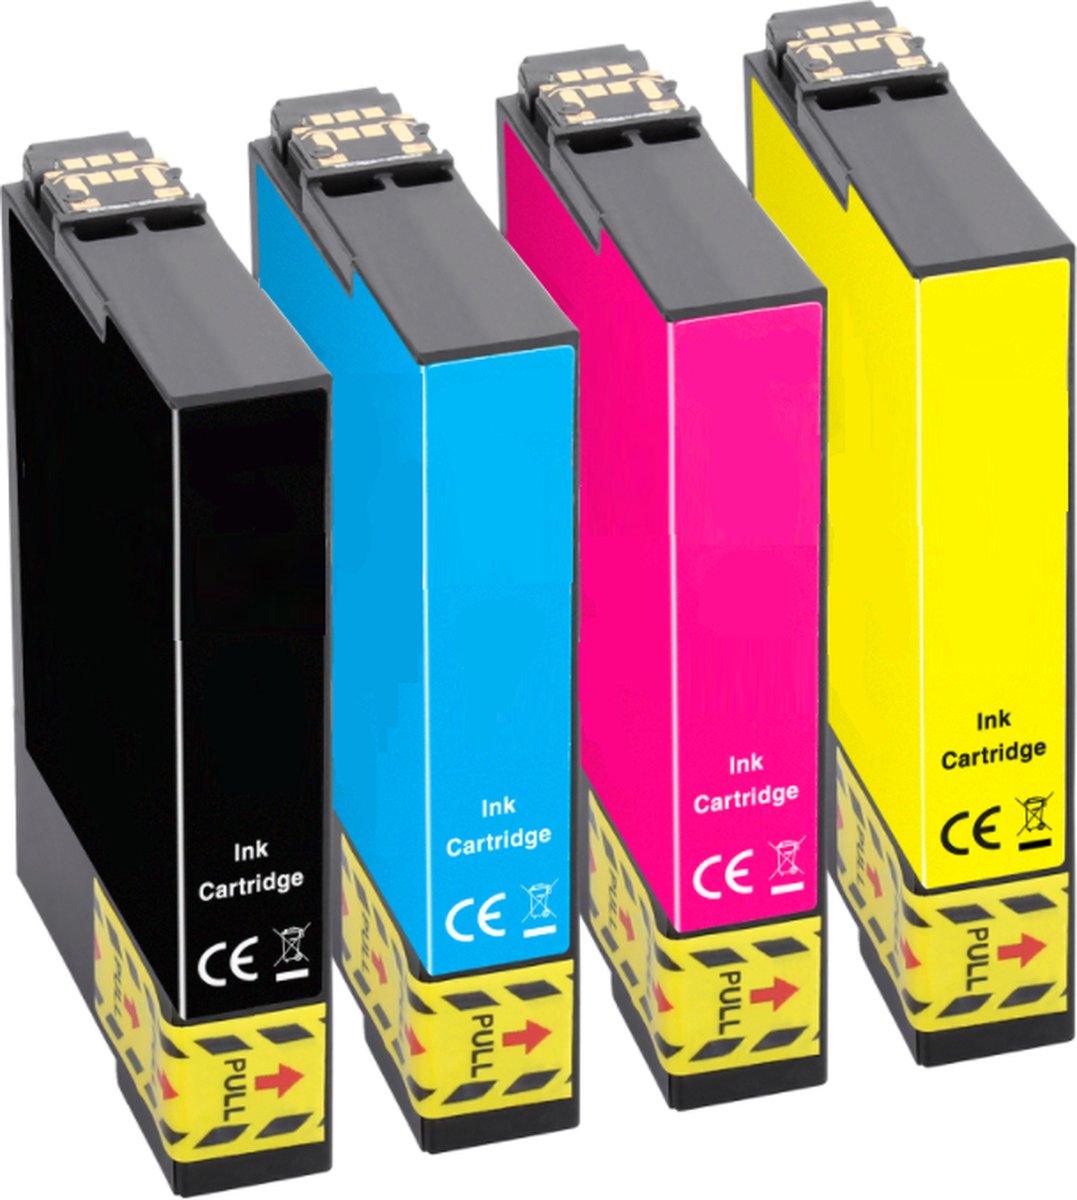 Compatible inkt cartridges Epson T0615 Multipack van 4 cartridges voor Epson... | bol.com